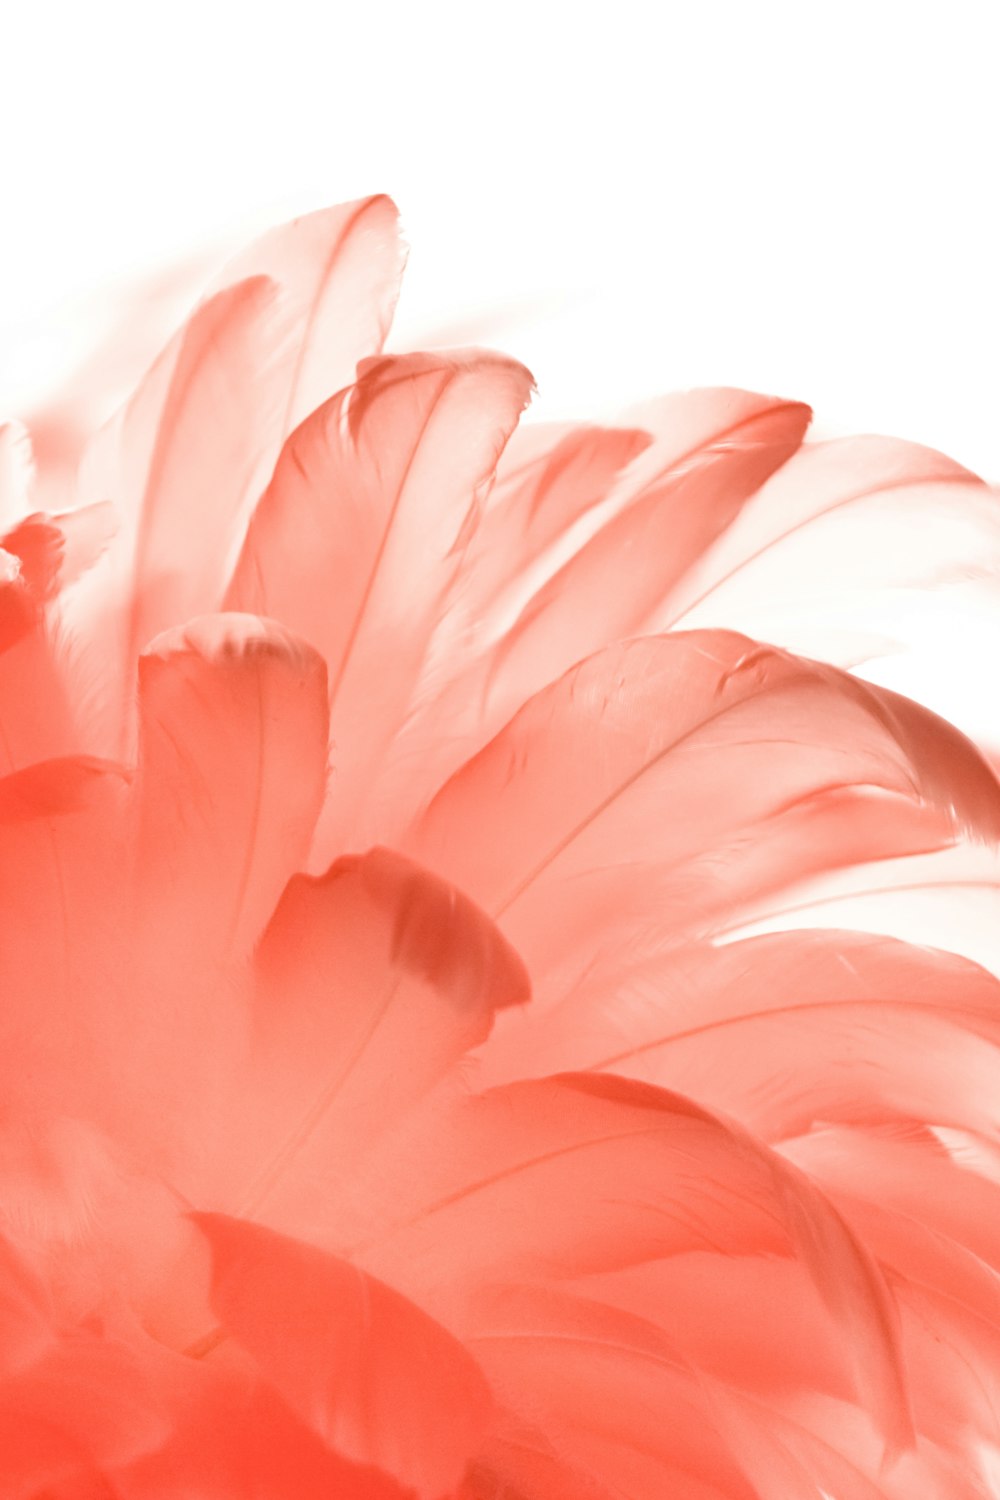 クローズアップ写真のピンクの花